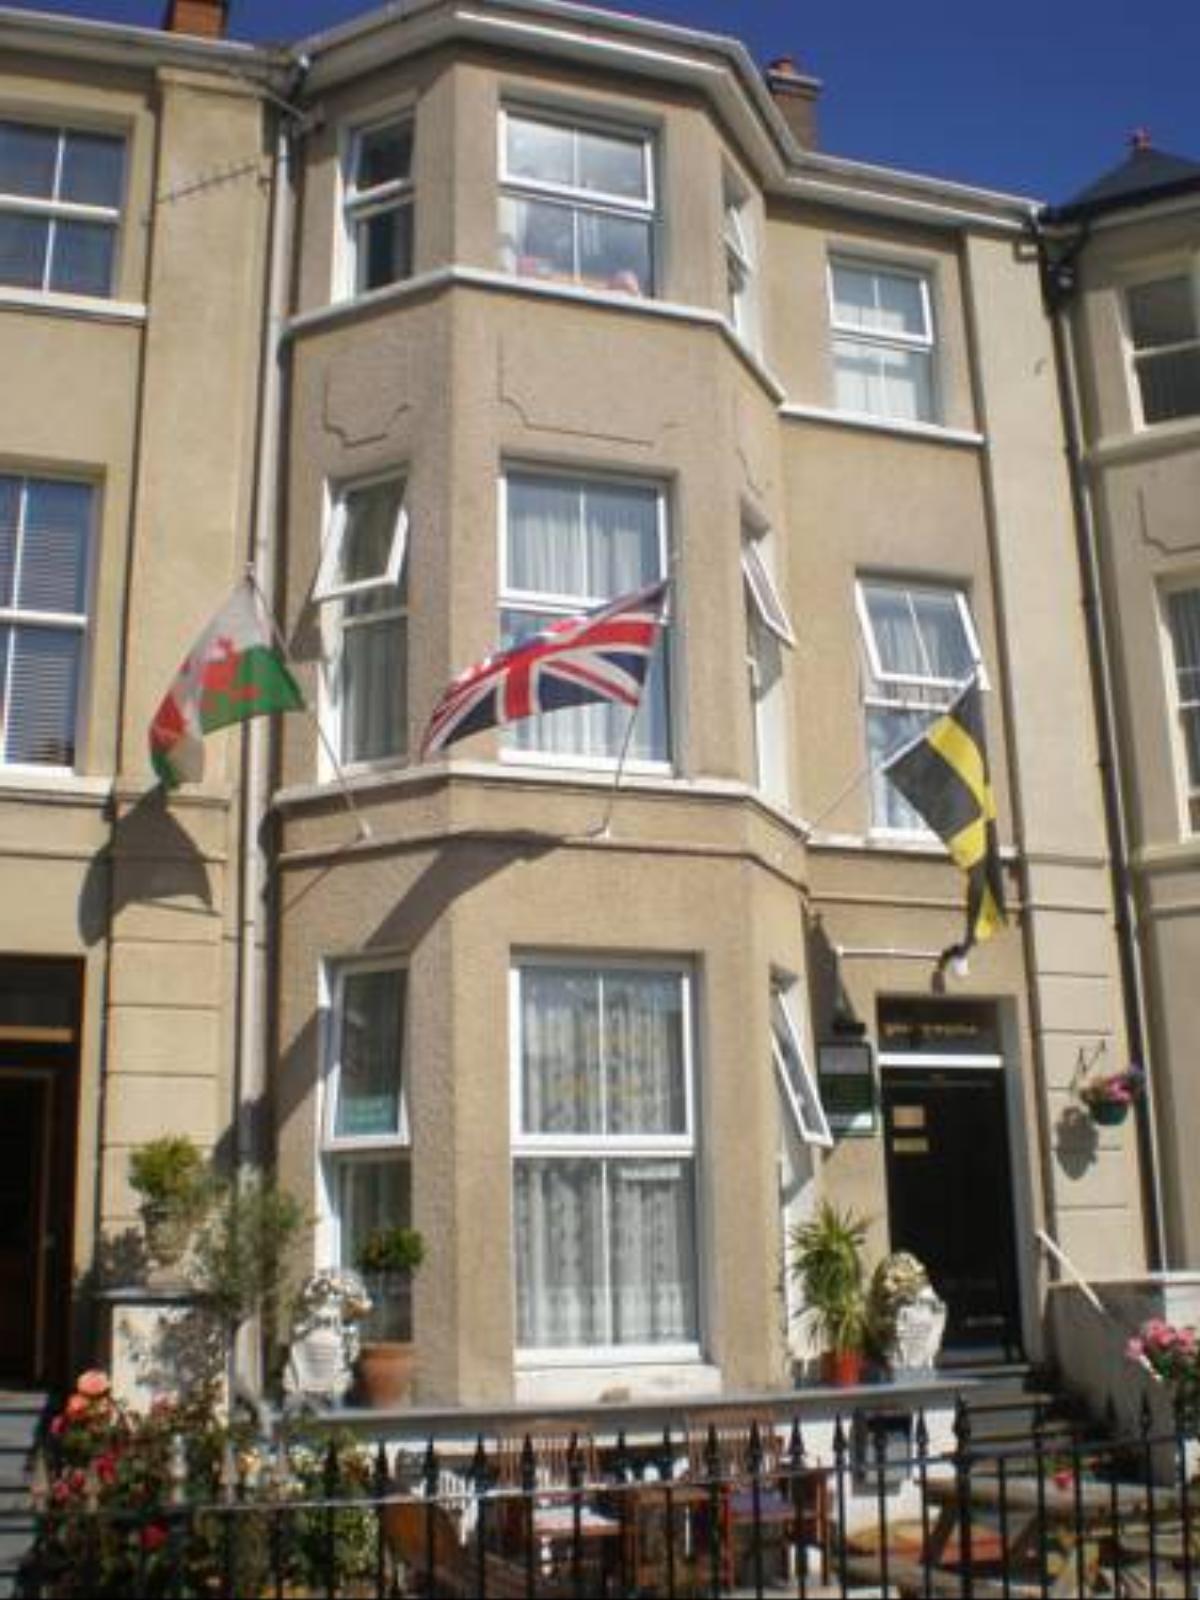 Llwynygog Guest House Hotel Aberystwyth United Kingdom